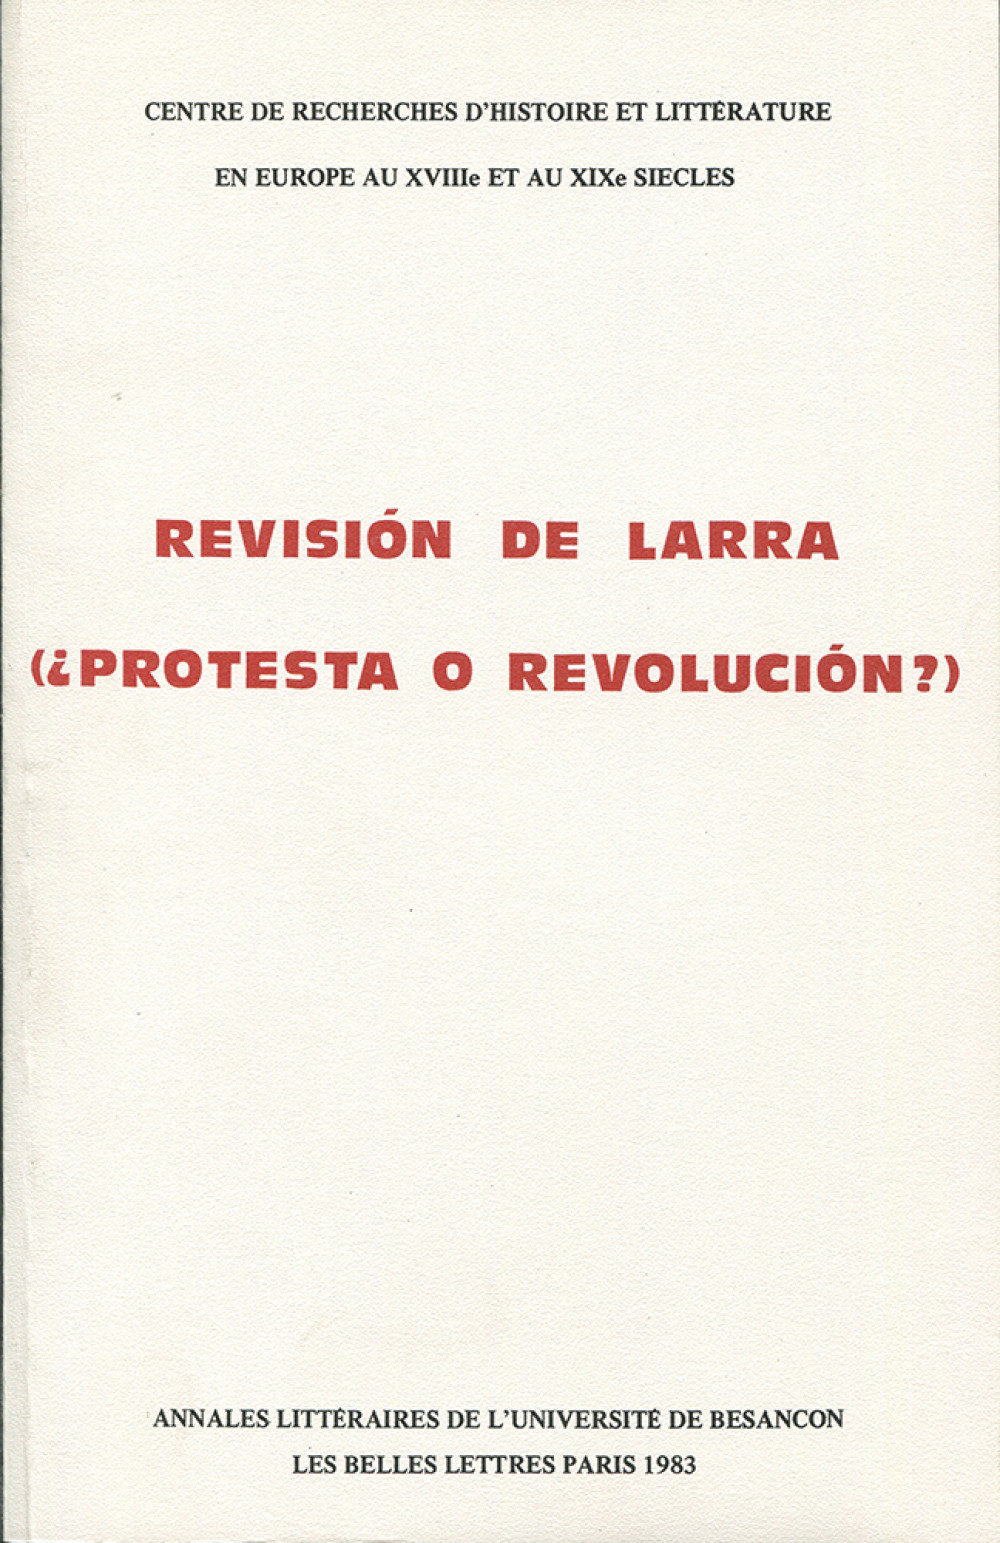 Revisión de Larra. Protesta o revolución?